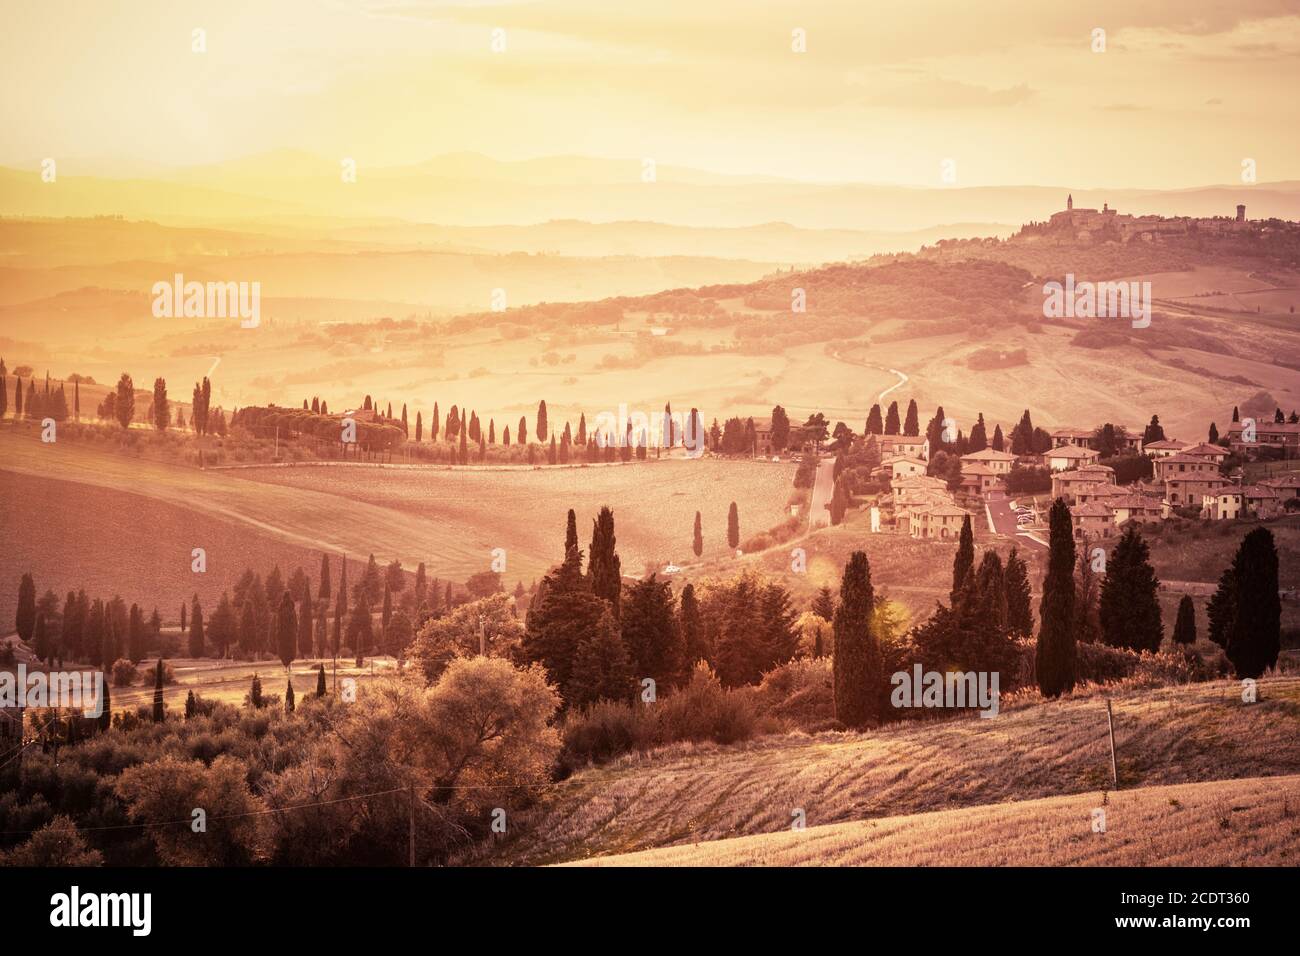 Meraviglioso paesaggio toscano con cipressi, fattorie e piccoli borghi medievali, Italia. Tramonto d'epoca Foto Stock